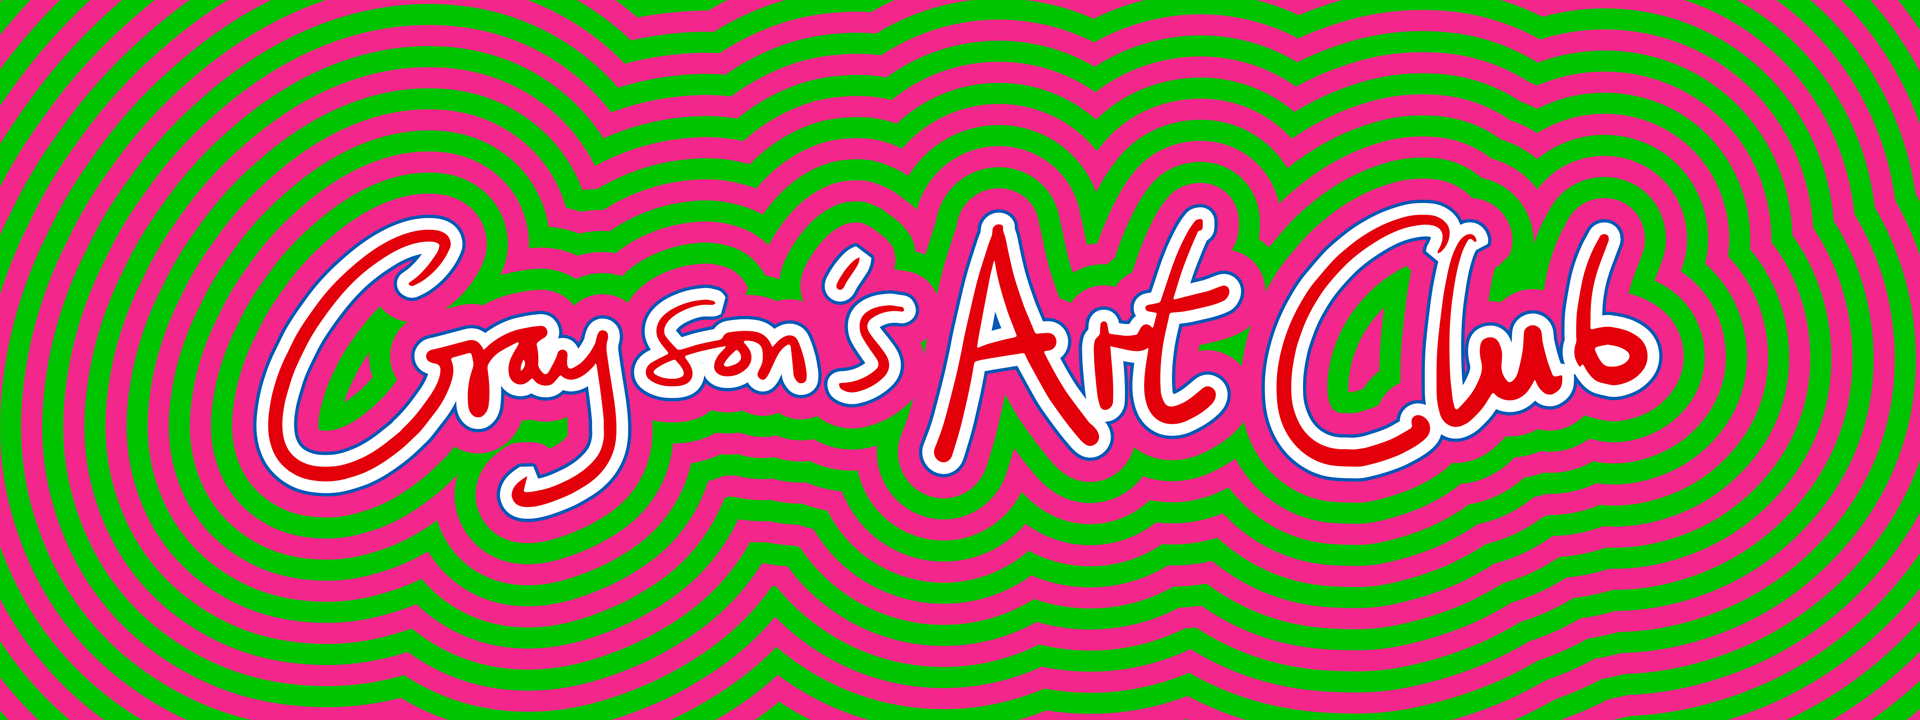 Grayson's Art Club TV show logo